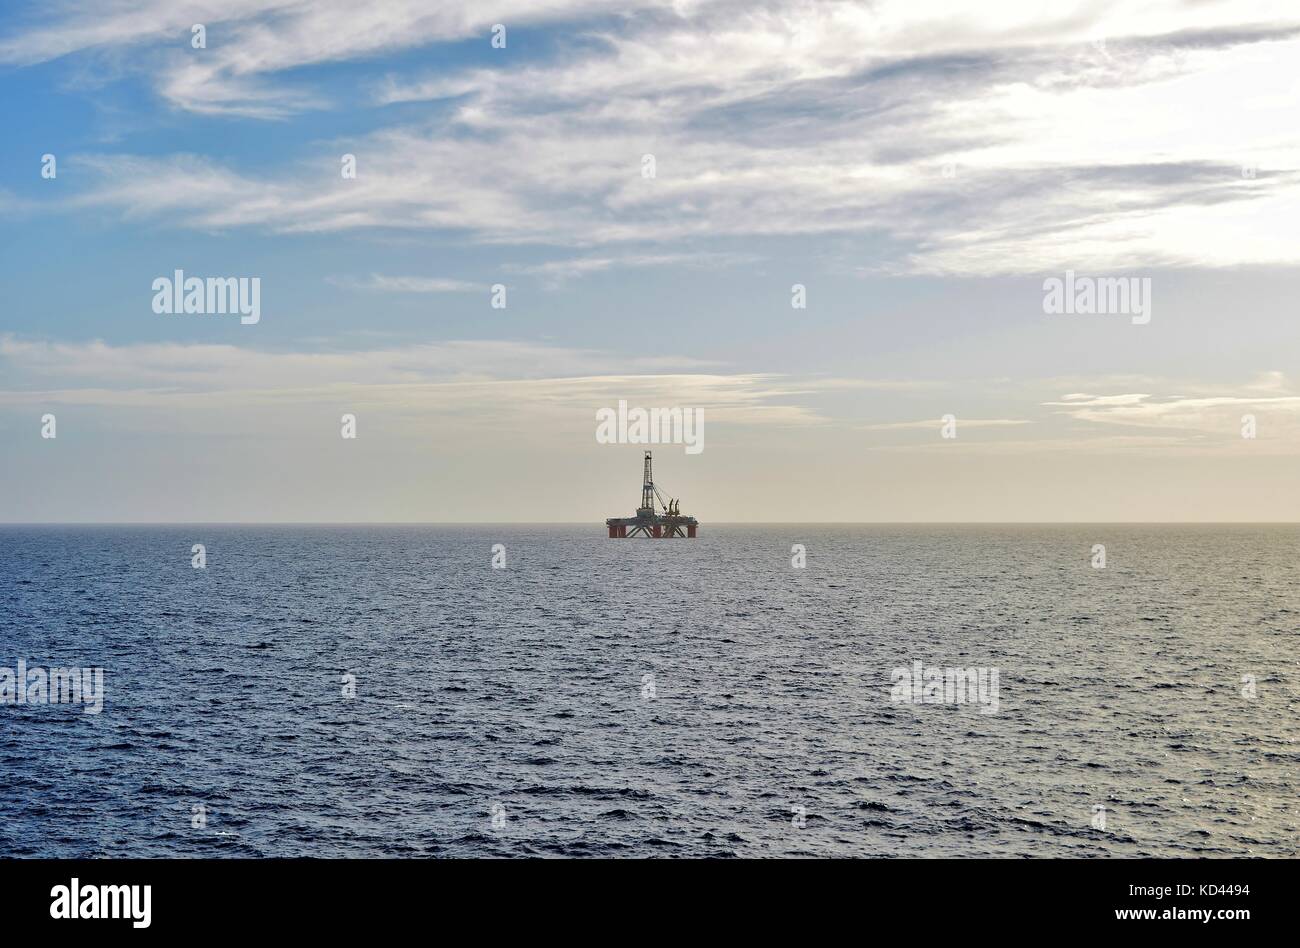 Une plate-forme pétrolière à l'arrêt, debout sur ses propres au loin, sur l'horizon, sur un jour nuageux, au large des côtes de Malte, Îles de Malte, mer Méditerranée Banque D'Images